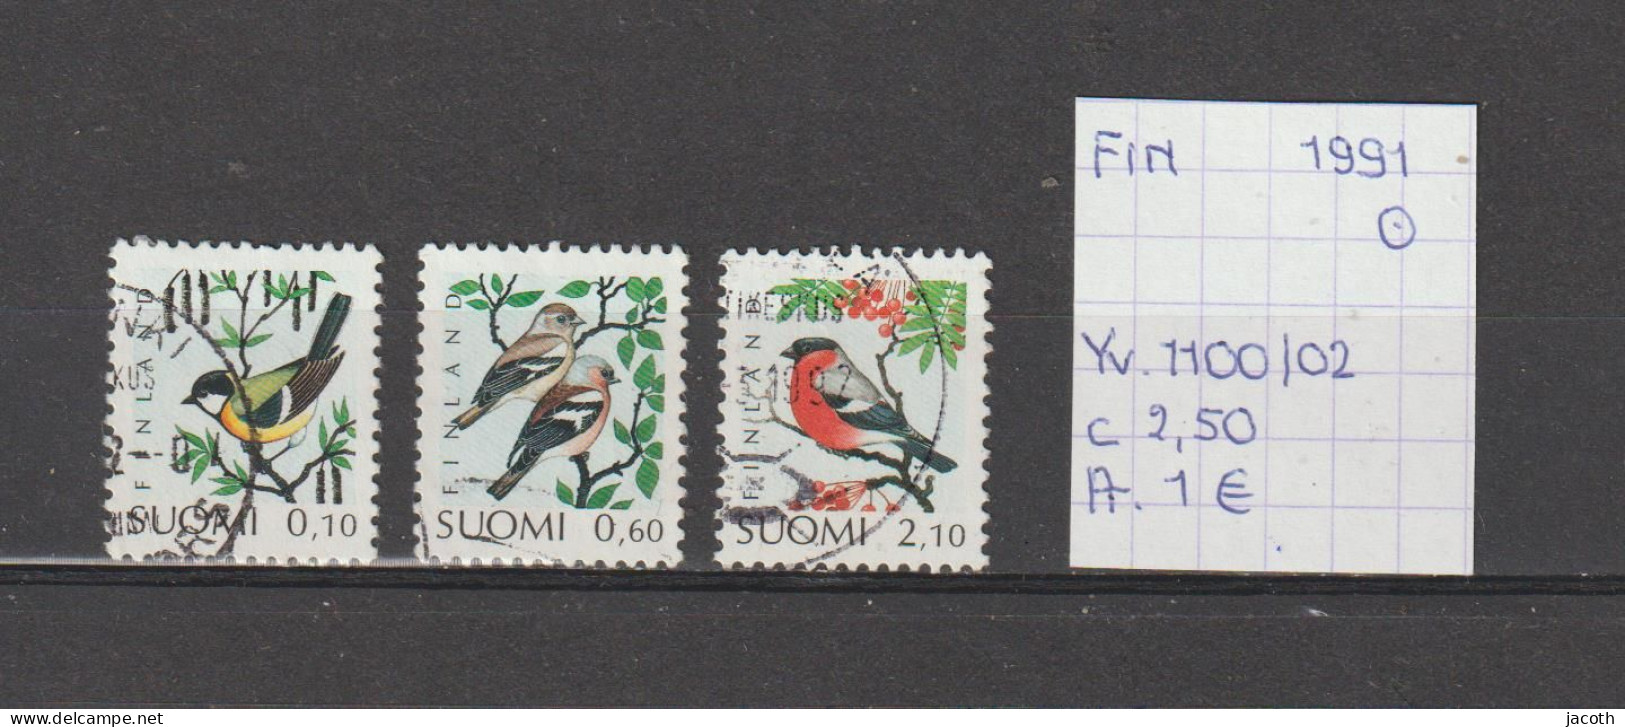 (TJ) Finland 1991 - YT 1100/02 (gest./obl./used) - Usados